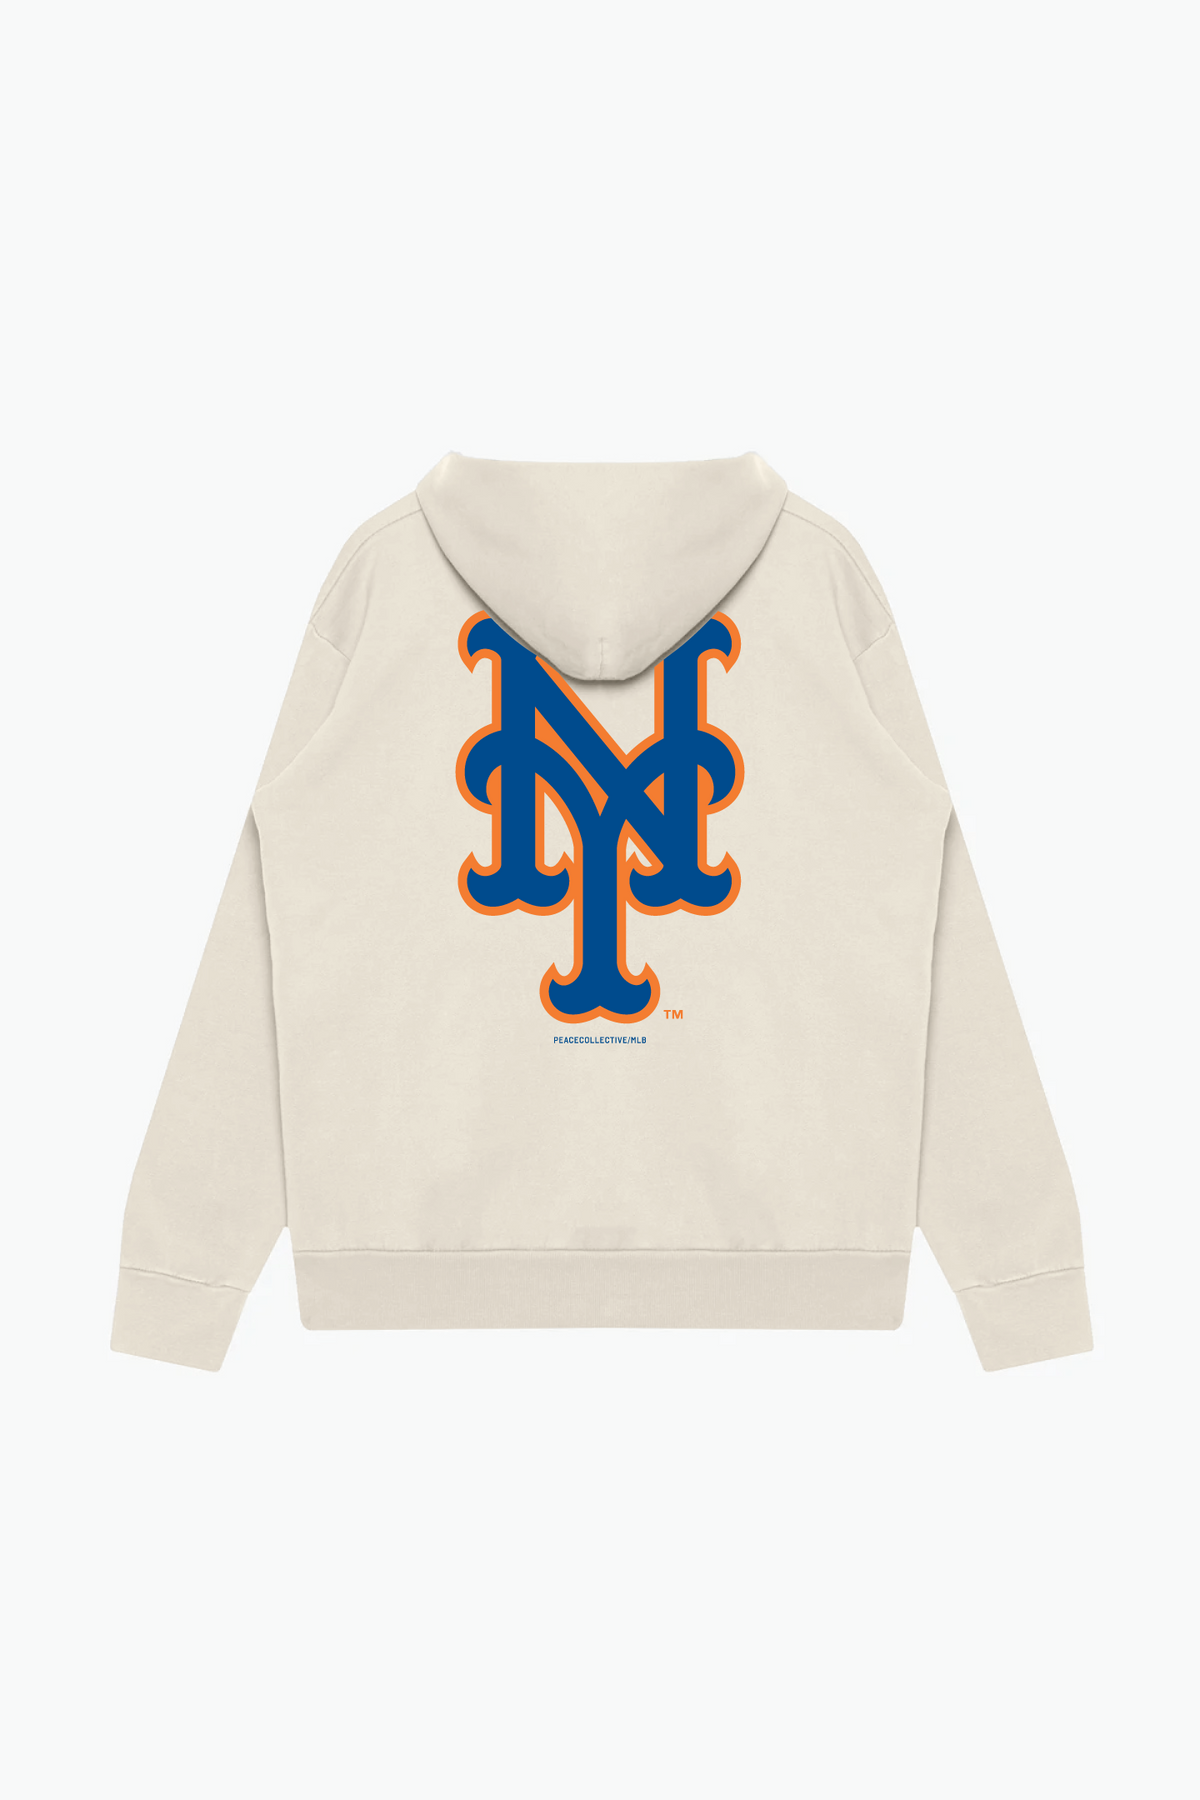 New York Mets Heavyweight Hoodie - Ivory